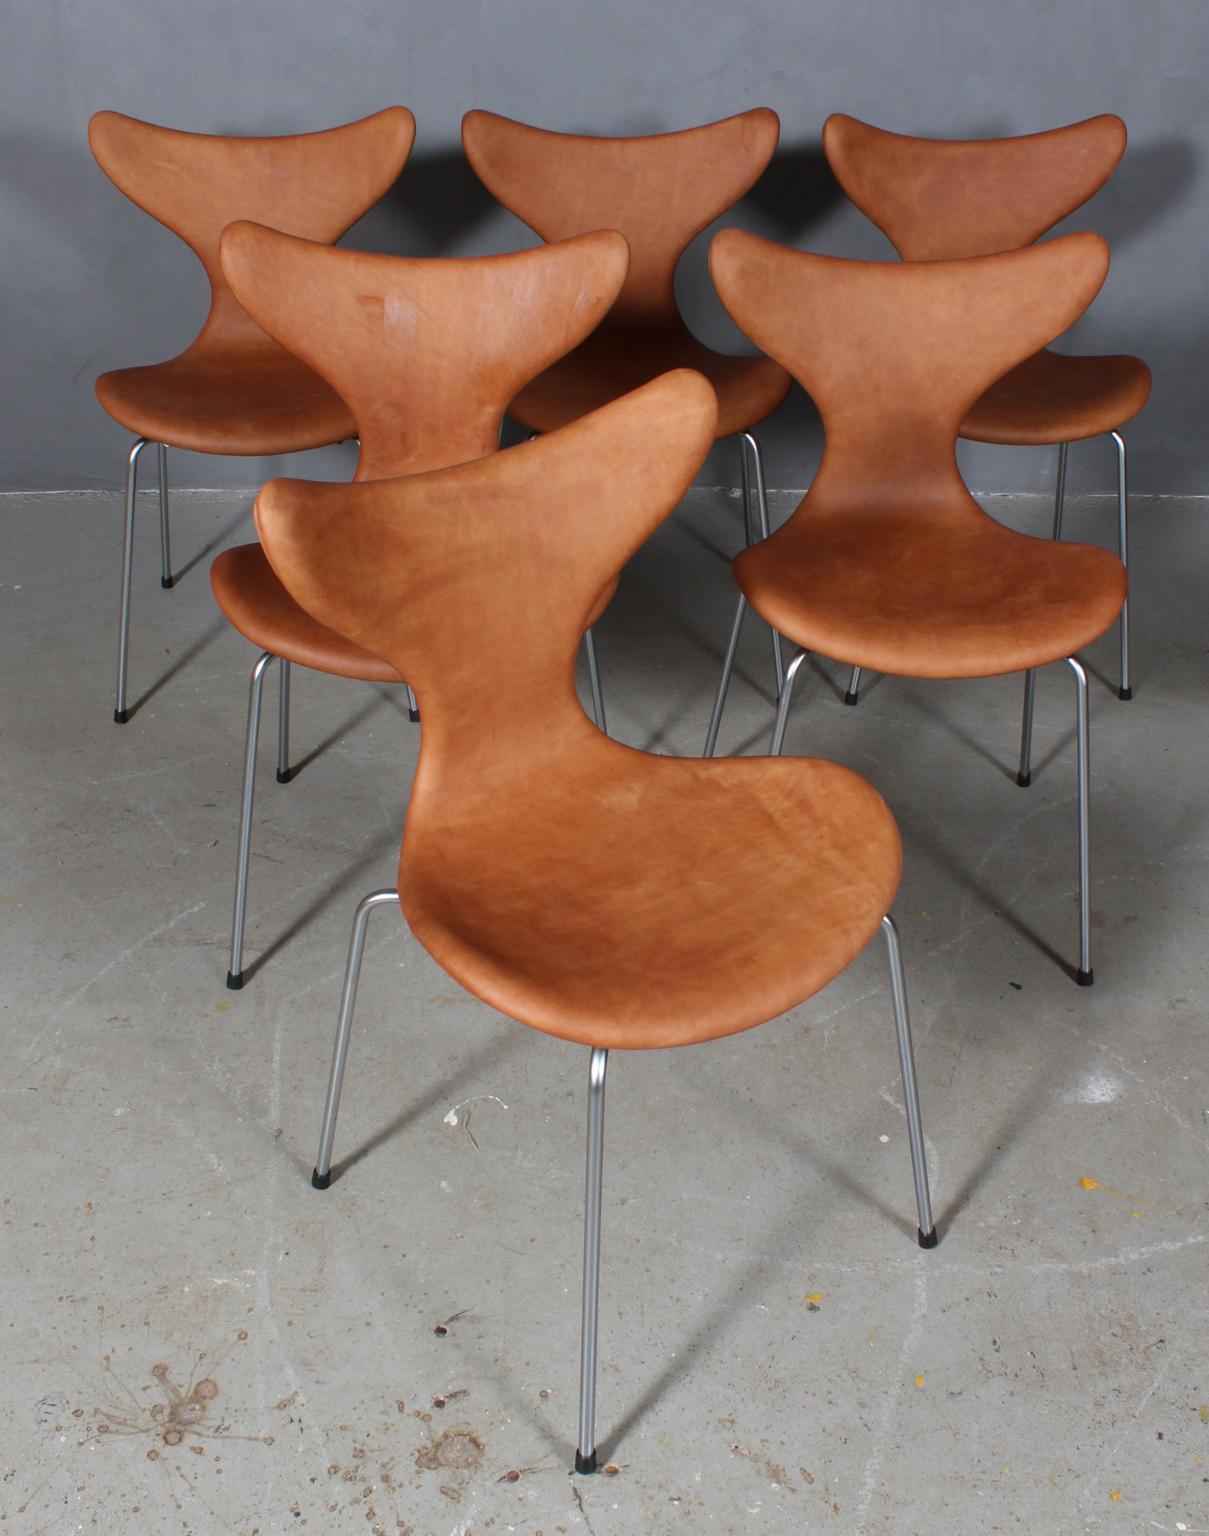 Arne Jacobsen dining chair new upholstered with vintage tan aniline leather.

Base of matt chromed steel tube.

Model 3108 Seagull, made by Fritz Hansen.